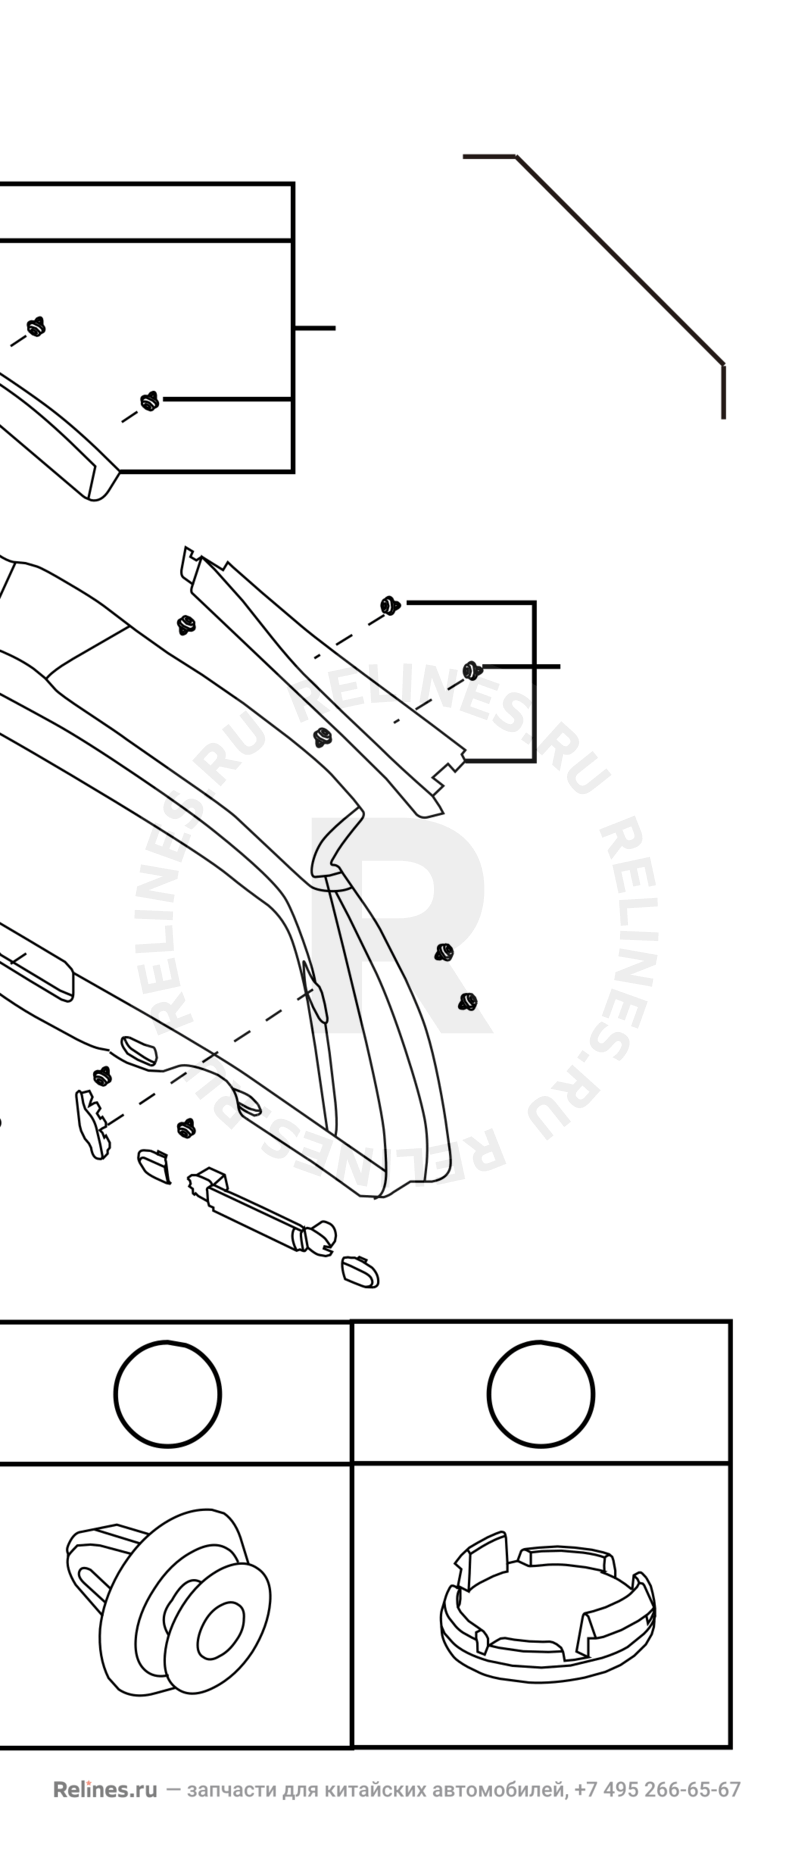 Запчасти Great Wall Hover H6 Поколение I (2011) 2.0л, дизель, 4х4, МКПП — Обшивка и комплектующие 5-й двери (багажника) (1) — схема